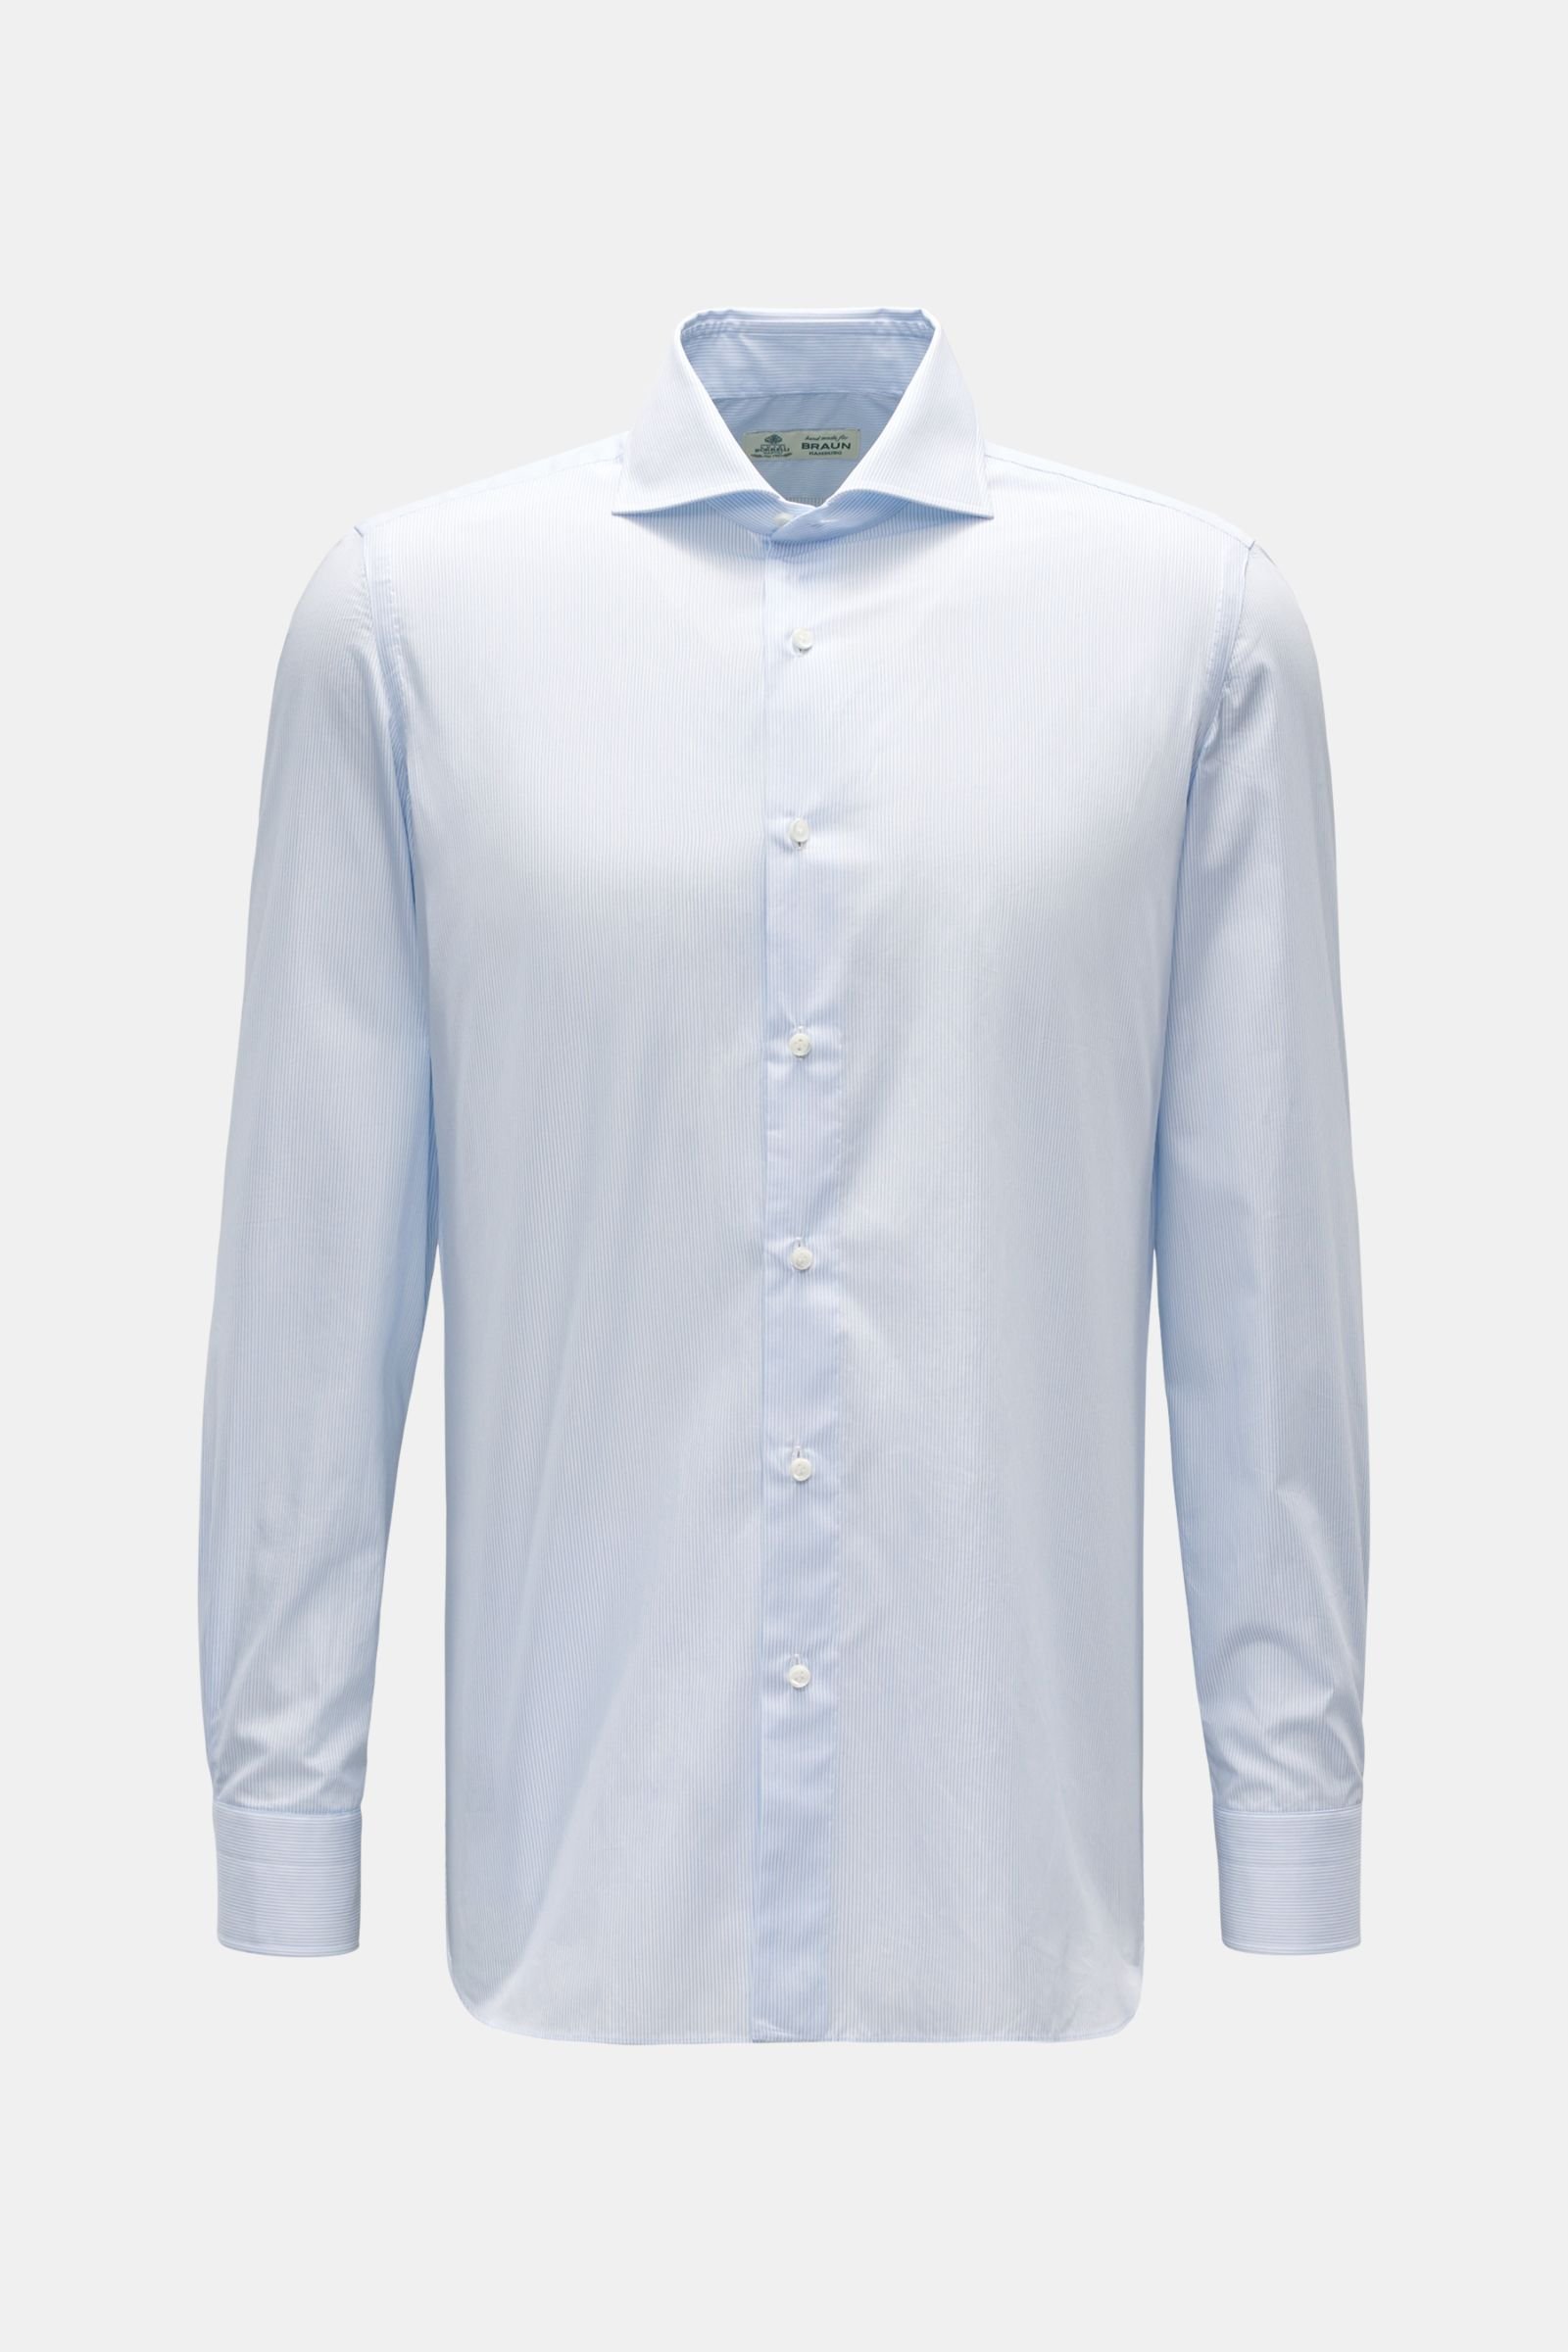 Business shirt 'Nando' shark collar smoky blue/white striped